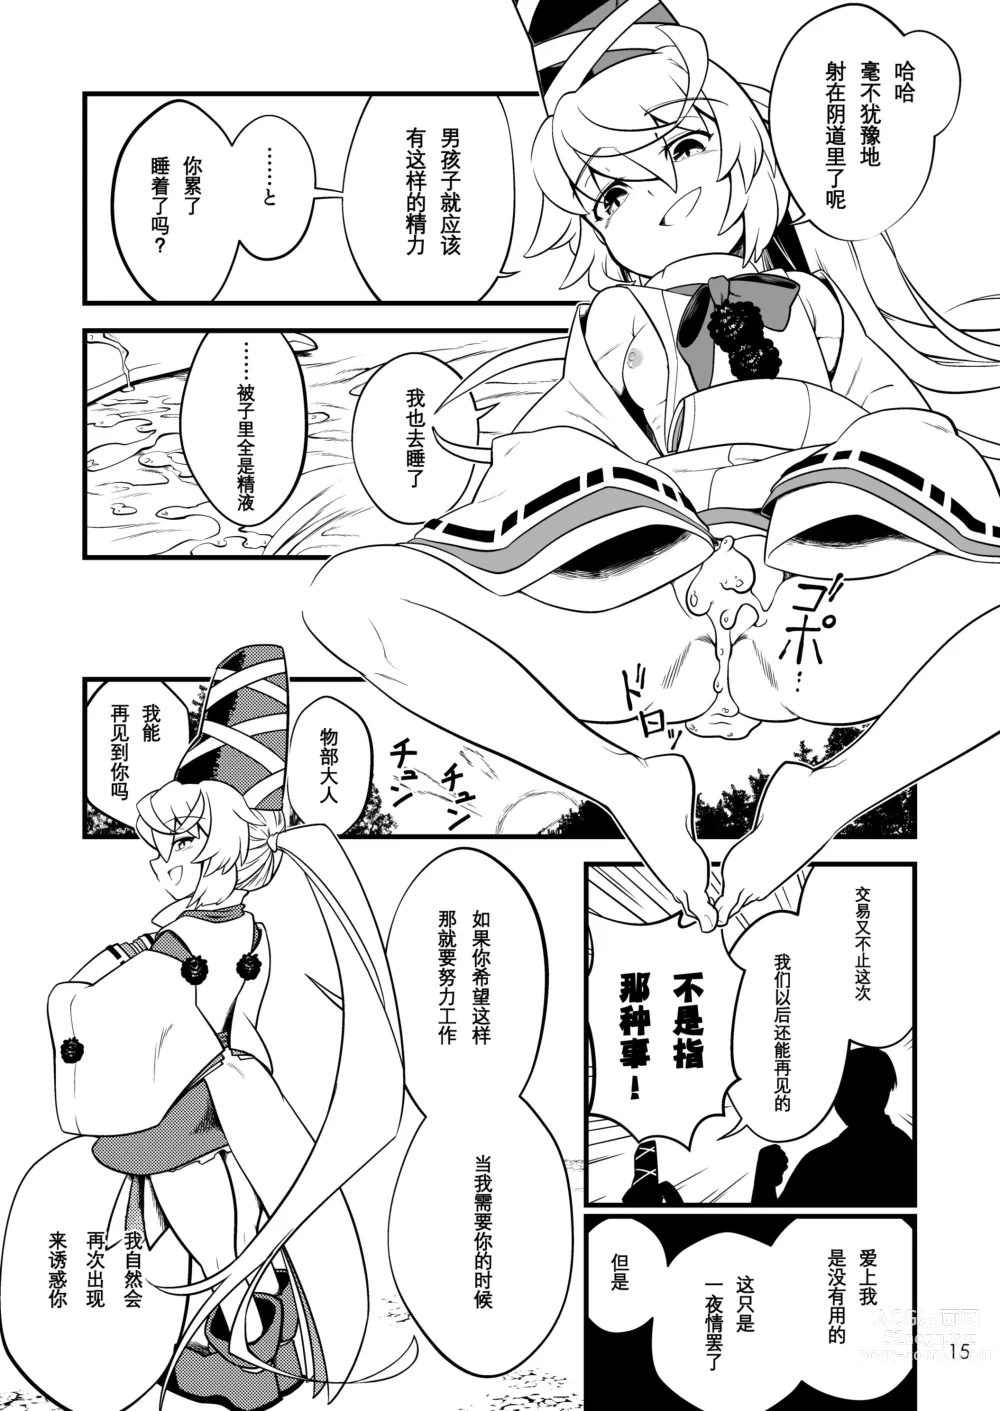 Page 17 of doujinshi Mononobe no Futo no Omotenashi